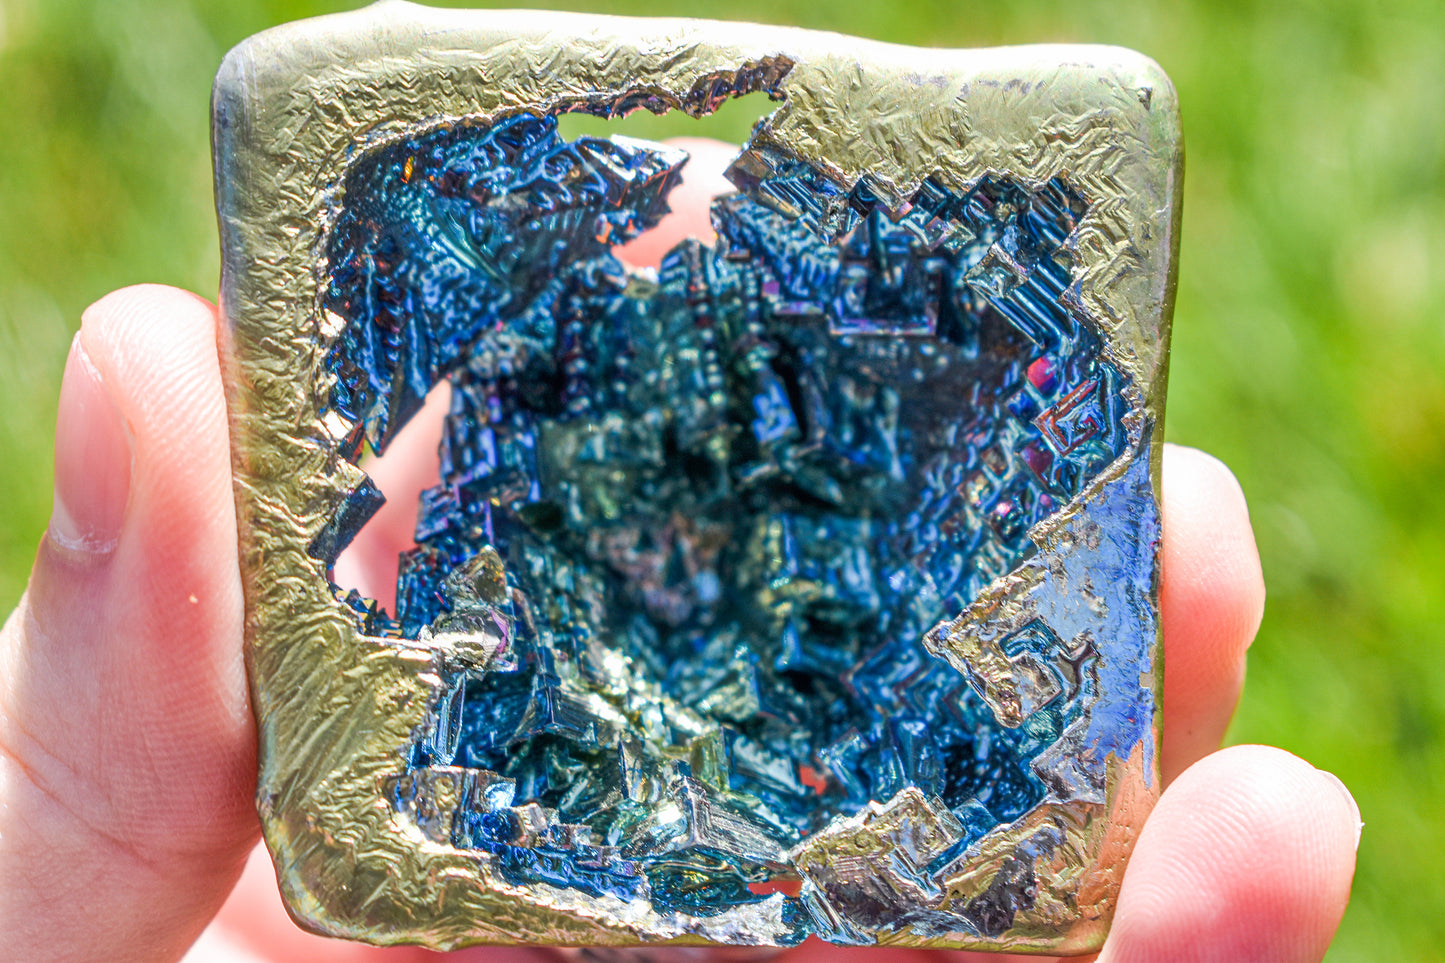 Octahedron Bismuth Geode